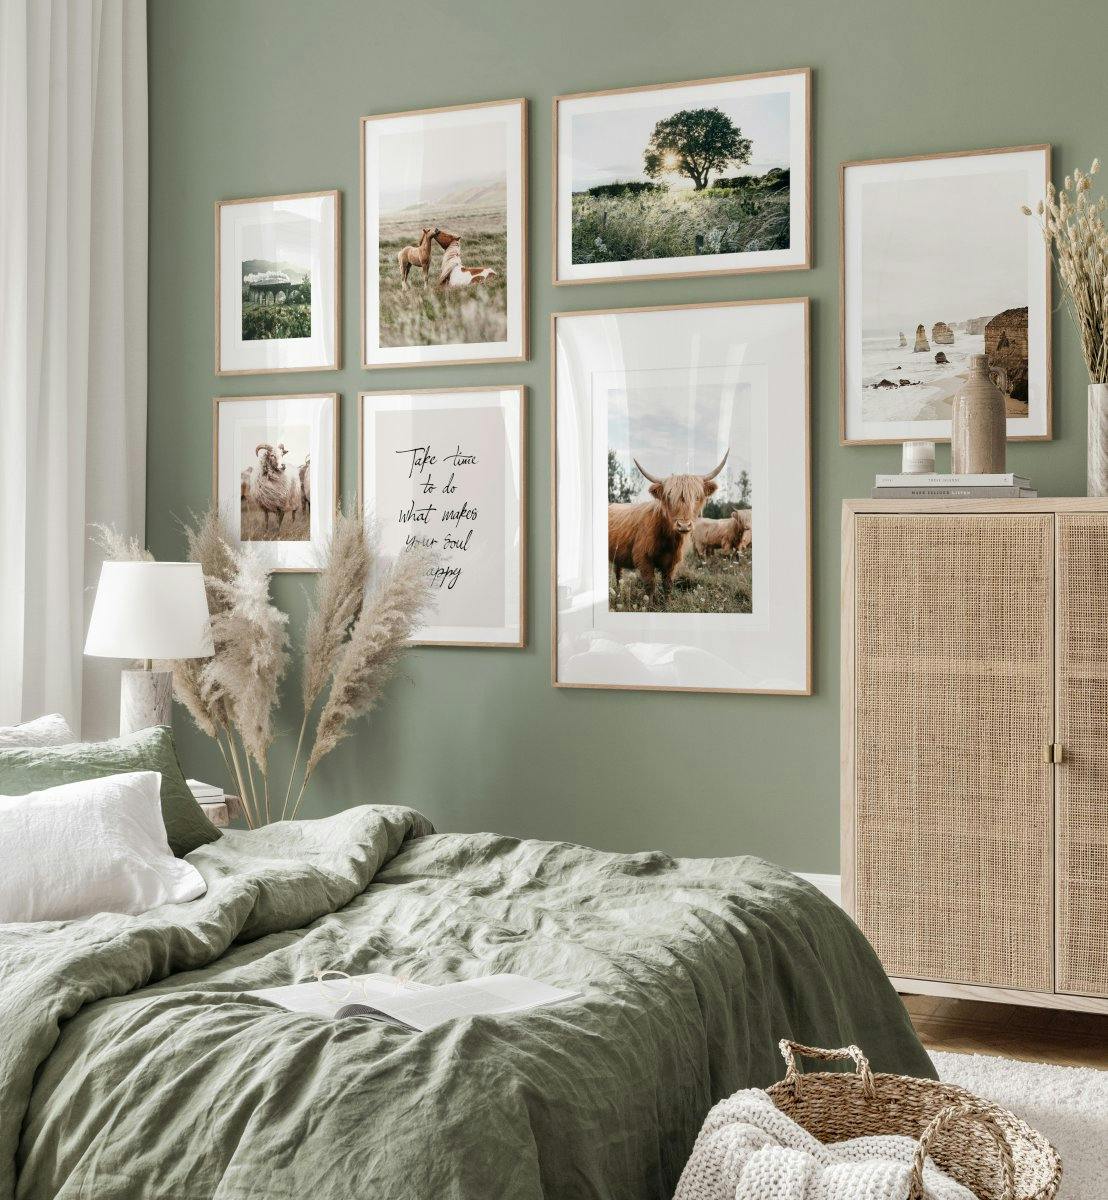 Szkocka galeria obrazow zielona sypialnia szkocka krowa wyzynna plakat debowe ramki